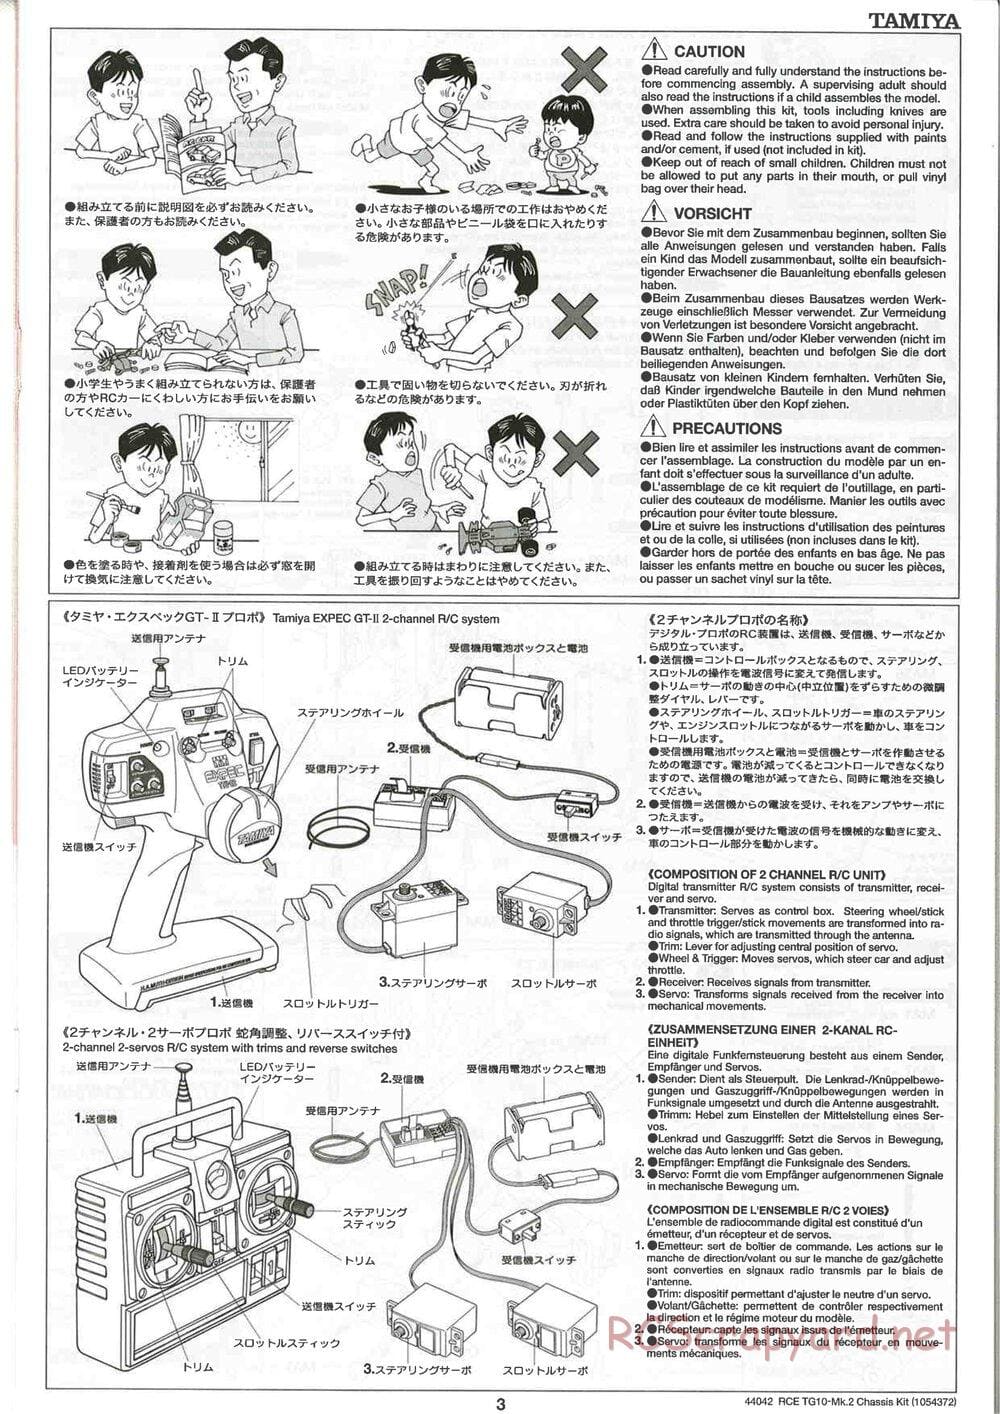 Tamiya - TG10 Mk.2 Chassis - Manual - Page 3